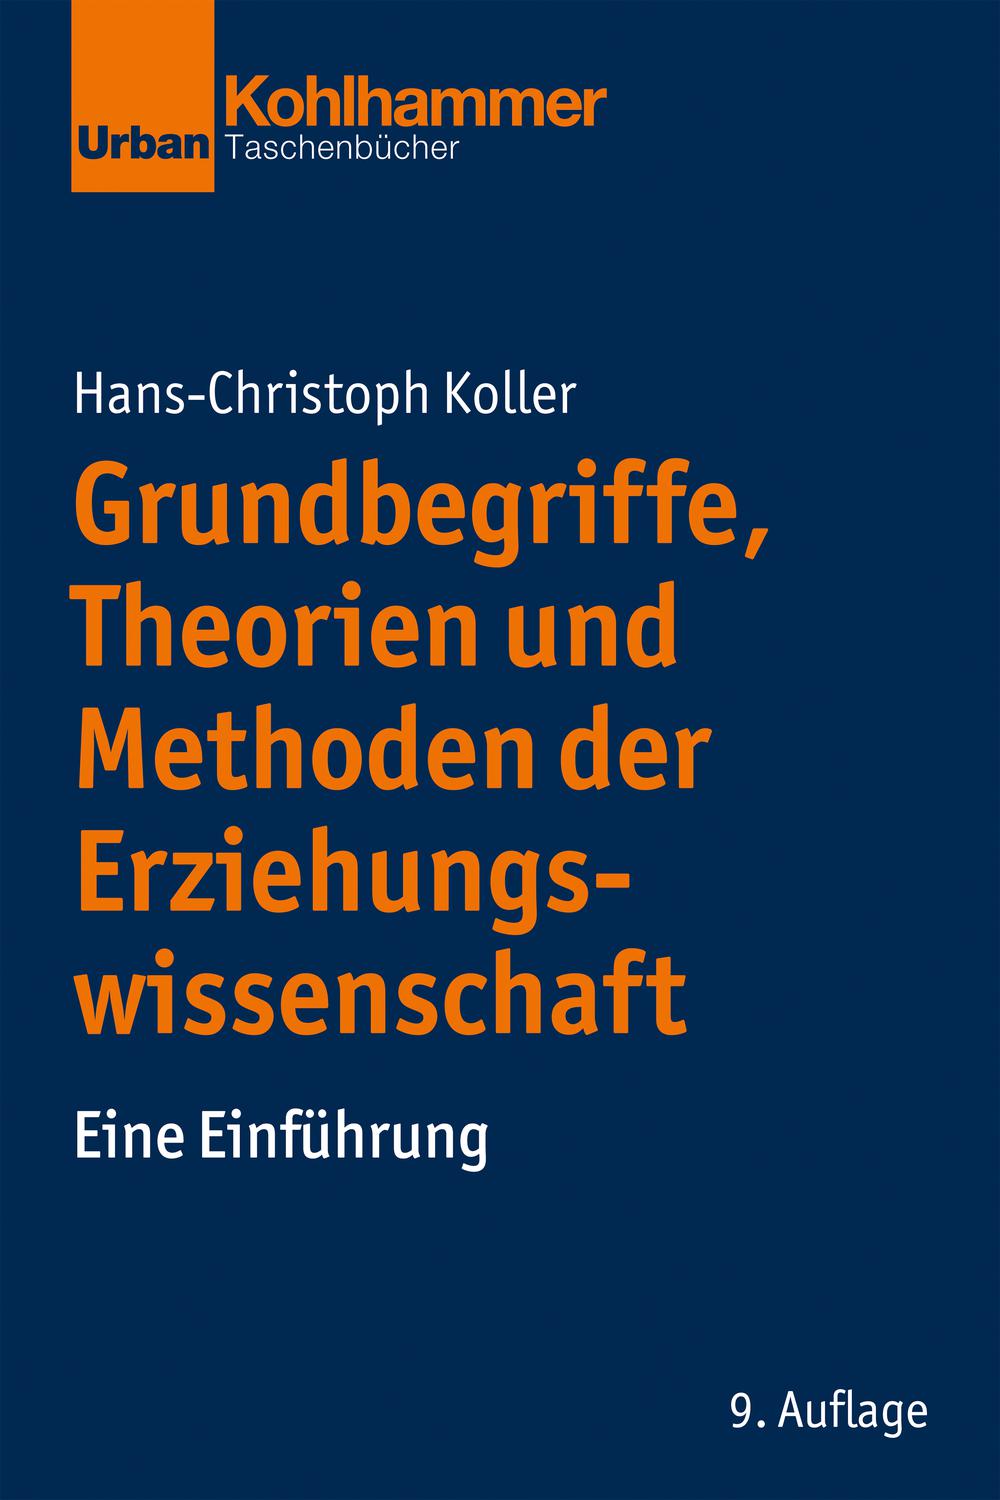 Grundbegriffe, Theorien und Methoden der Erziehungswissenschaft - Hans-Christoph Koller,,